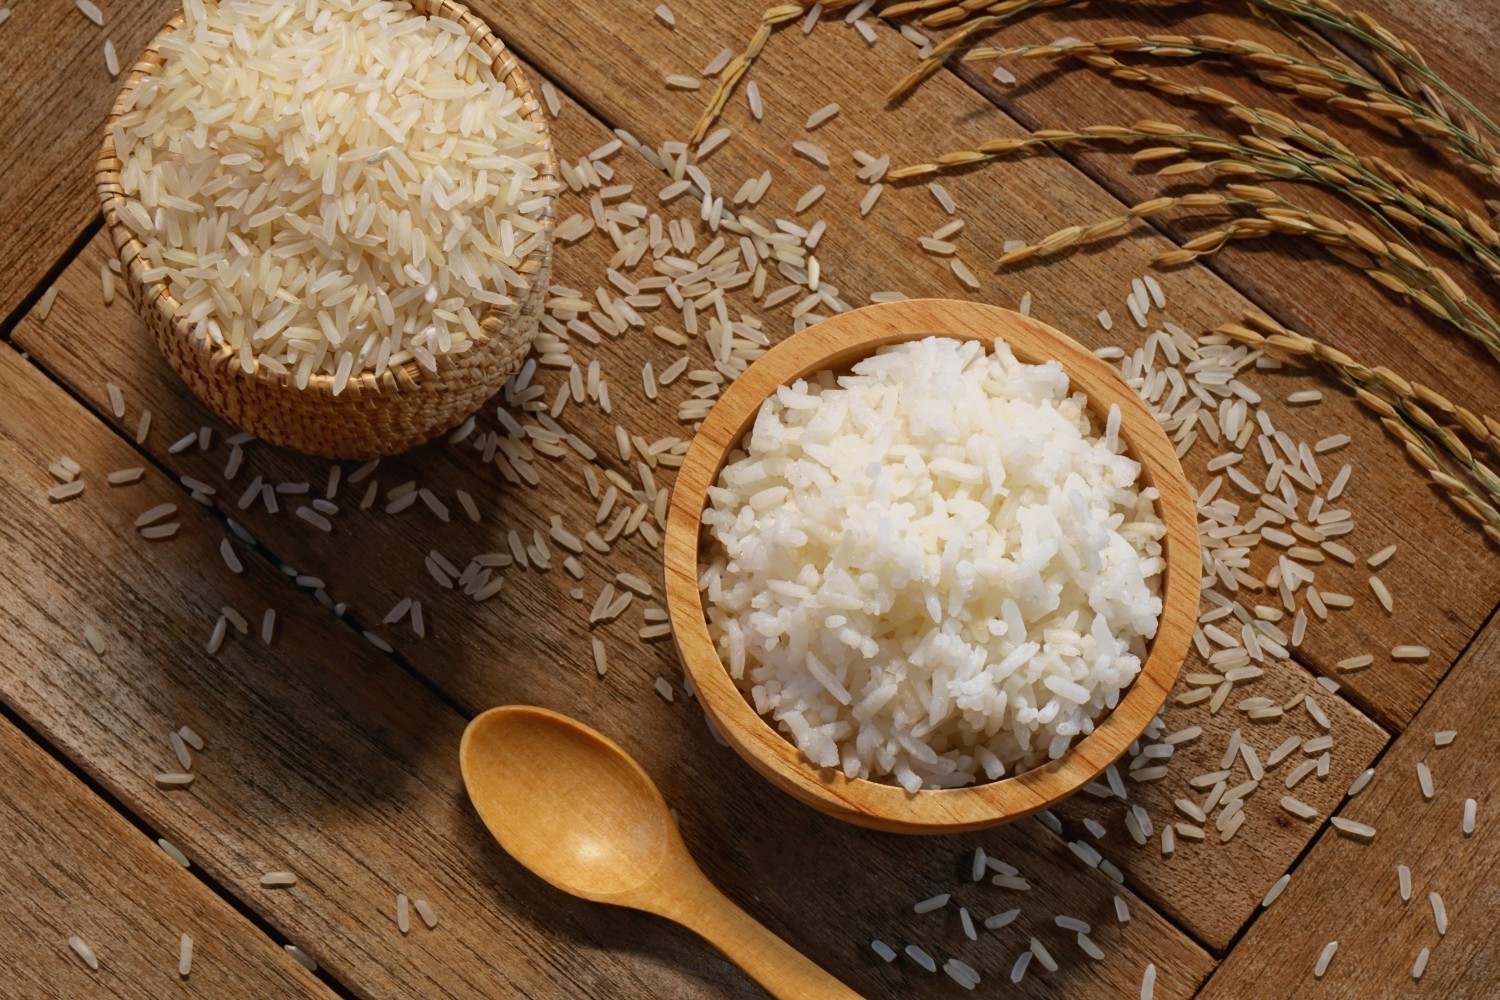 Jak ugotować ryż na sypko?